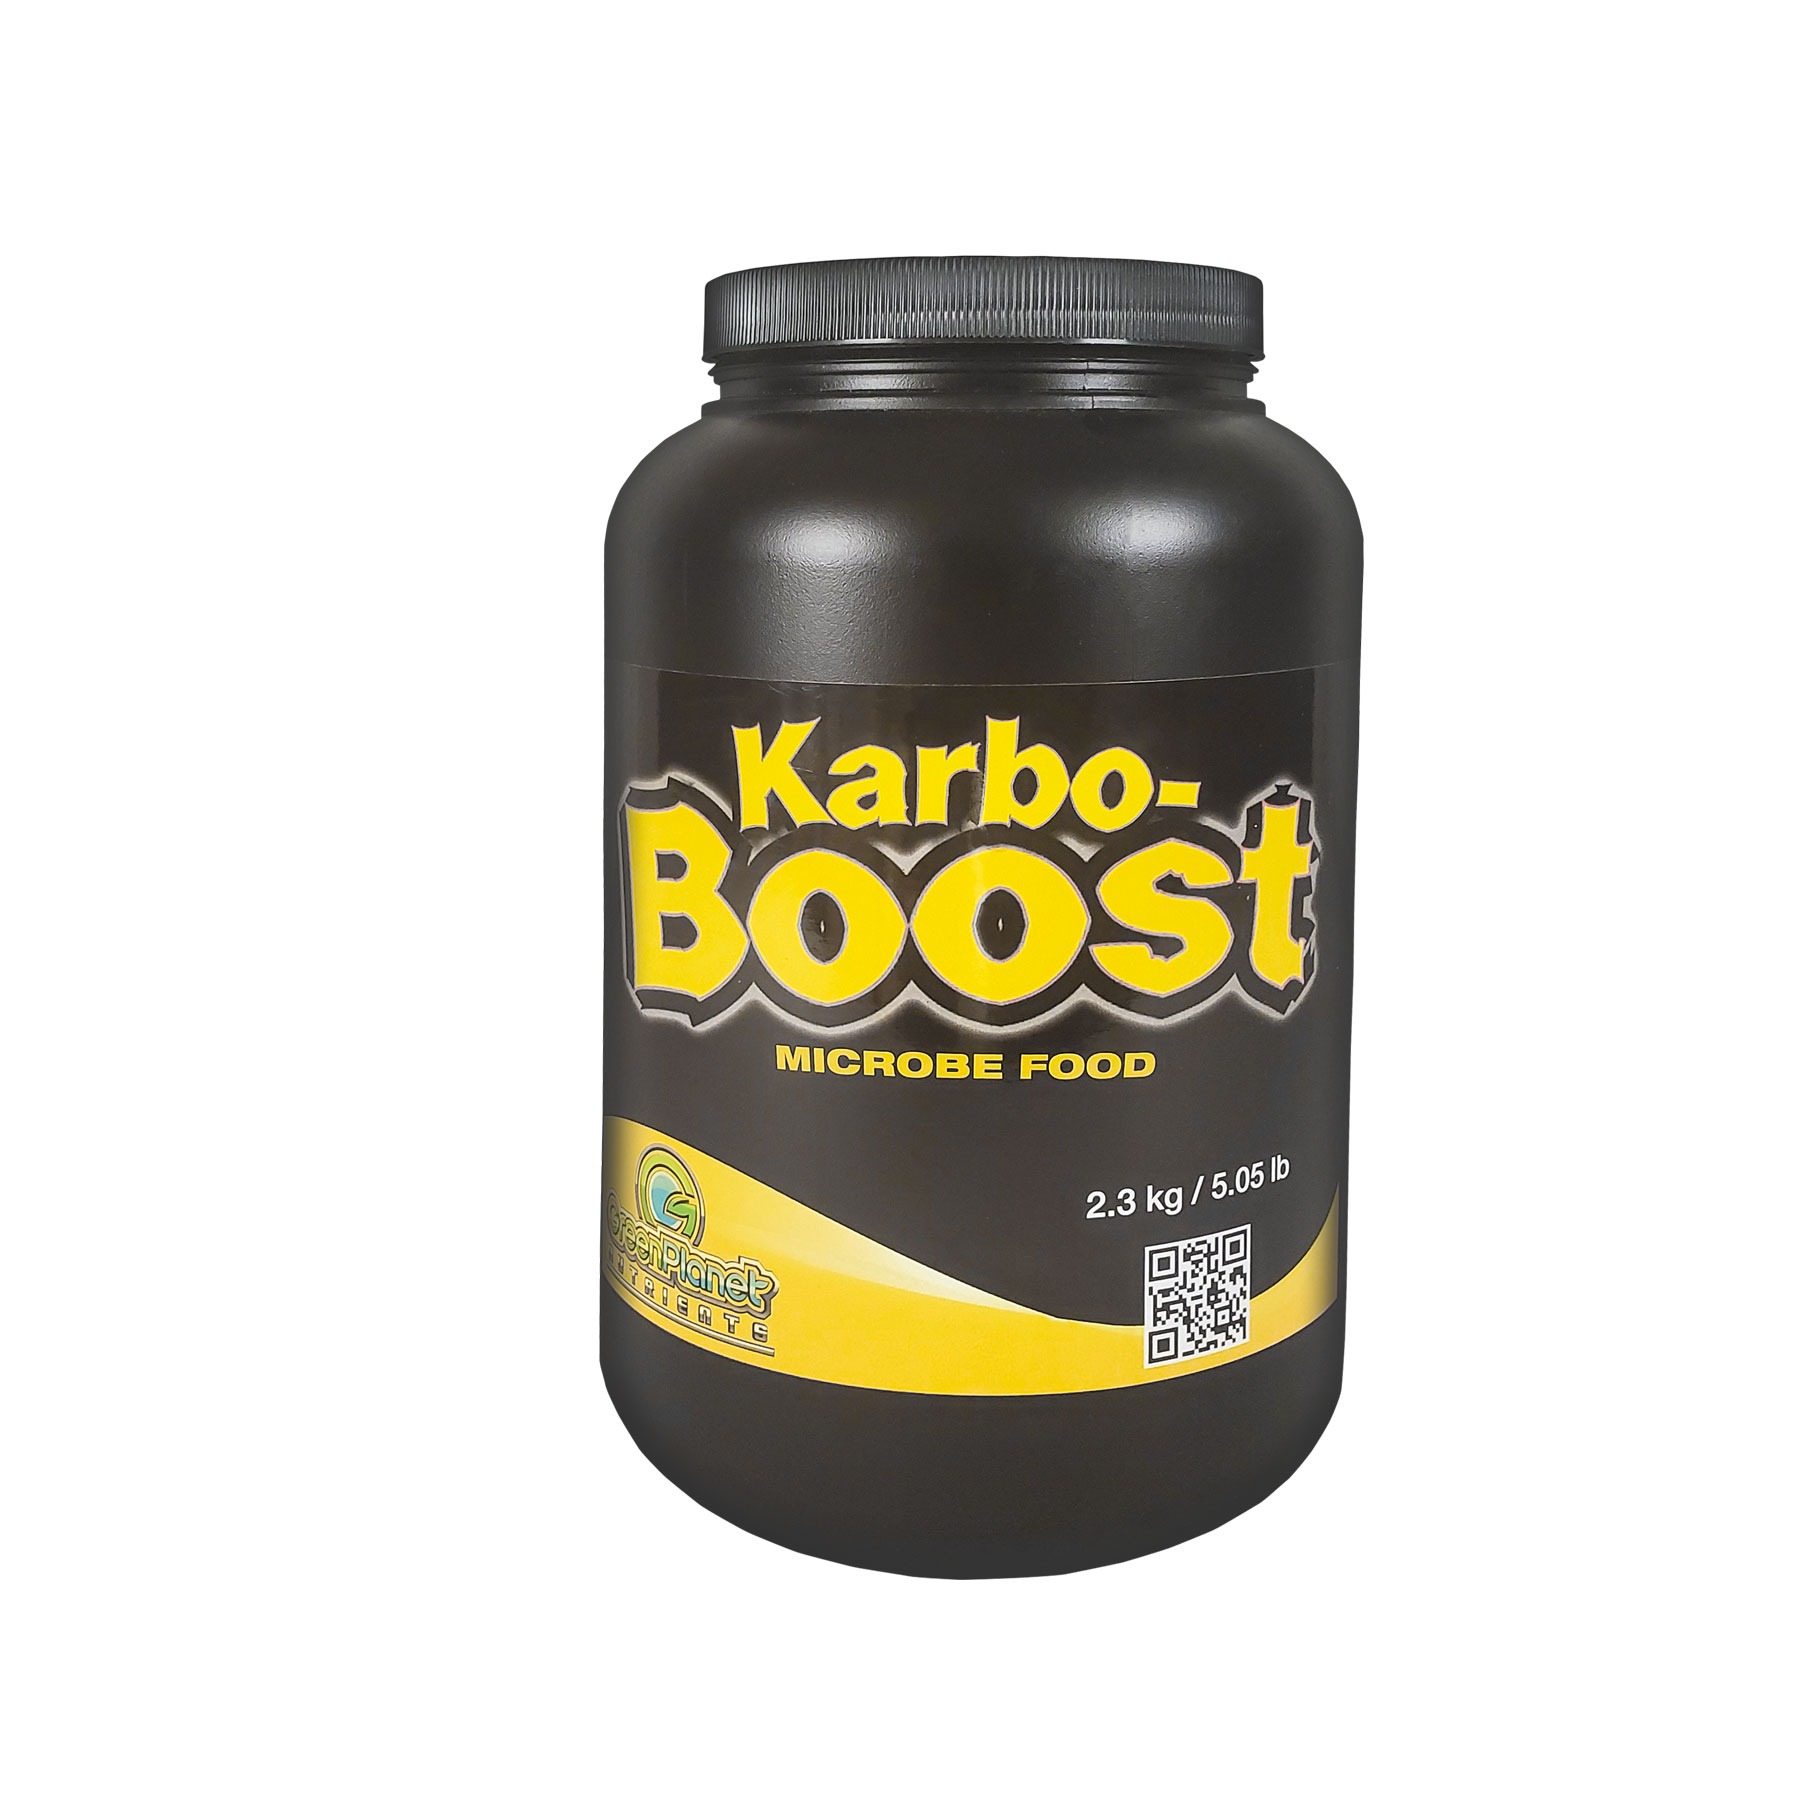 GreenPlanet Karbo Boost 2.3 kg